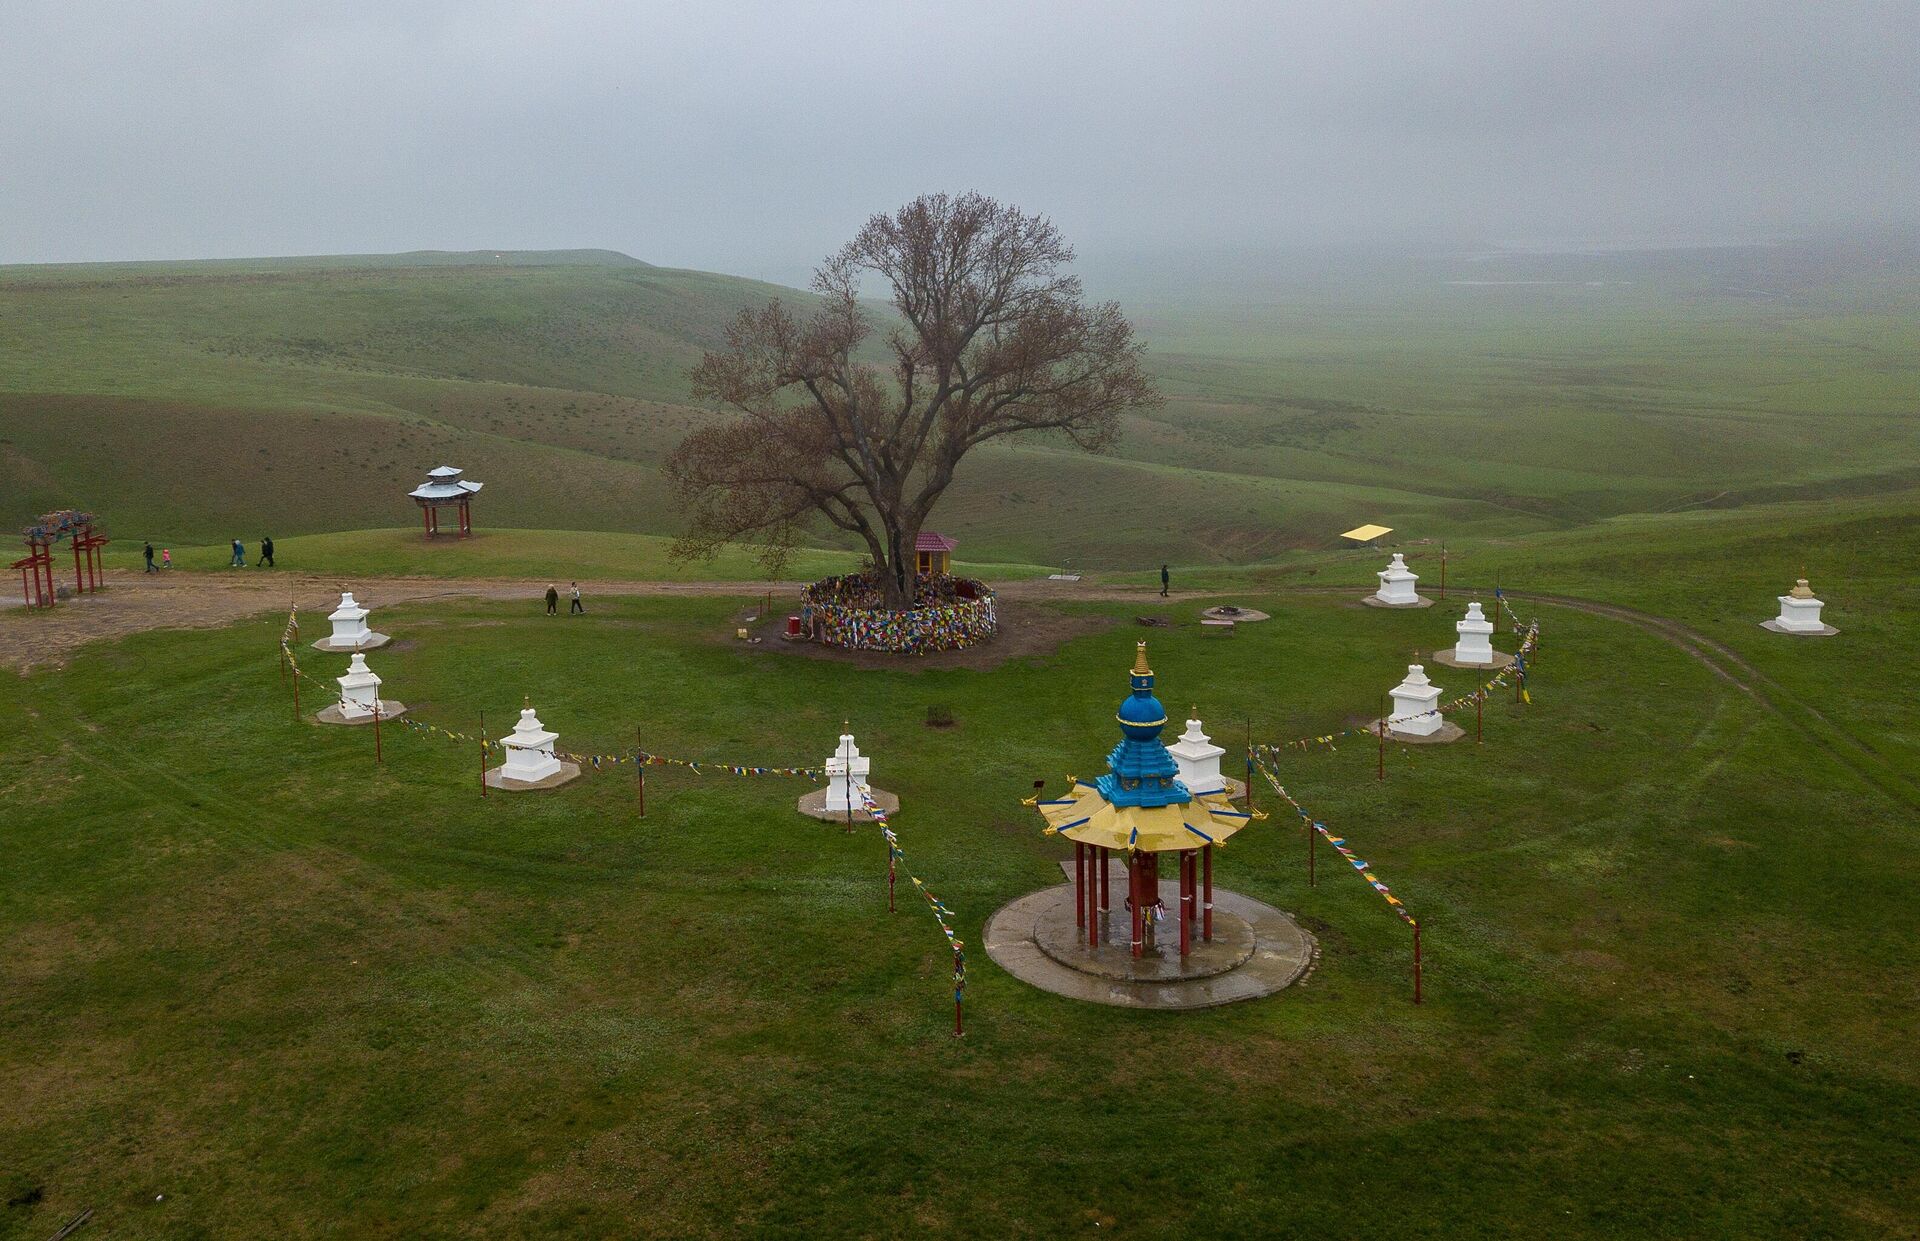 Одинокий тополь с каскадом родников - памятник природы регионального значения, который расположен на южном склоне хребта Хамур. Является местом преклонения буддистов Калмыкии